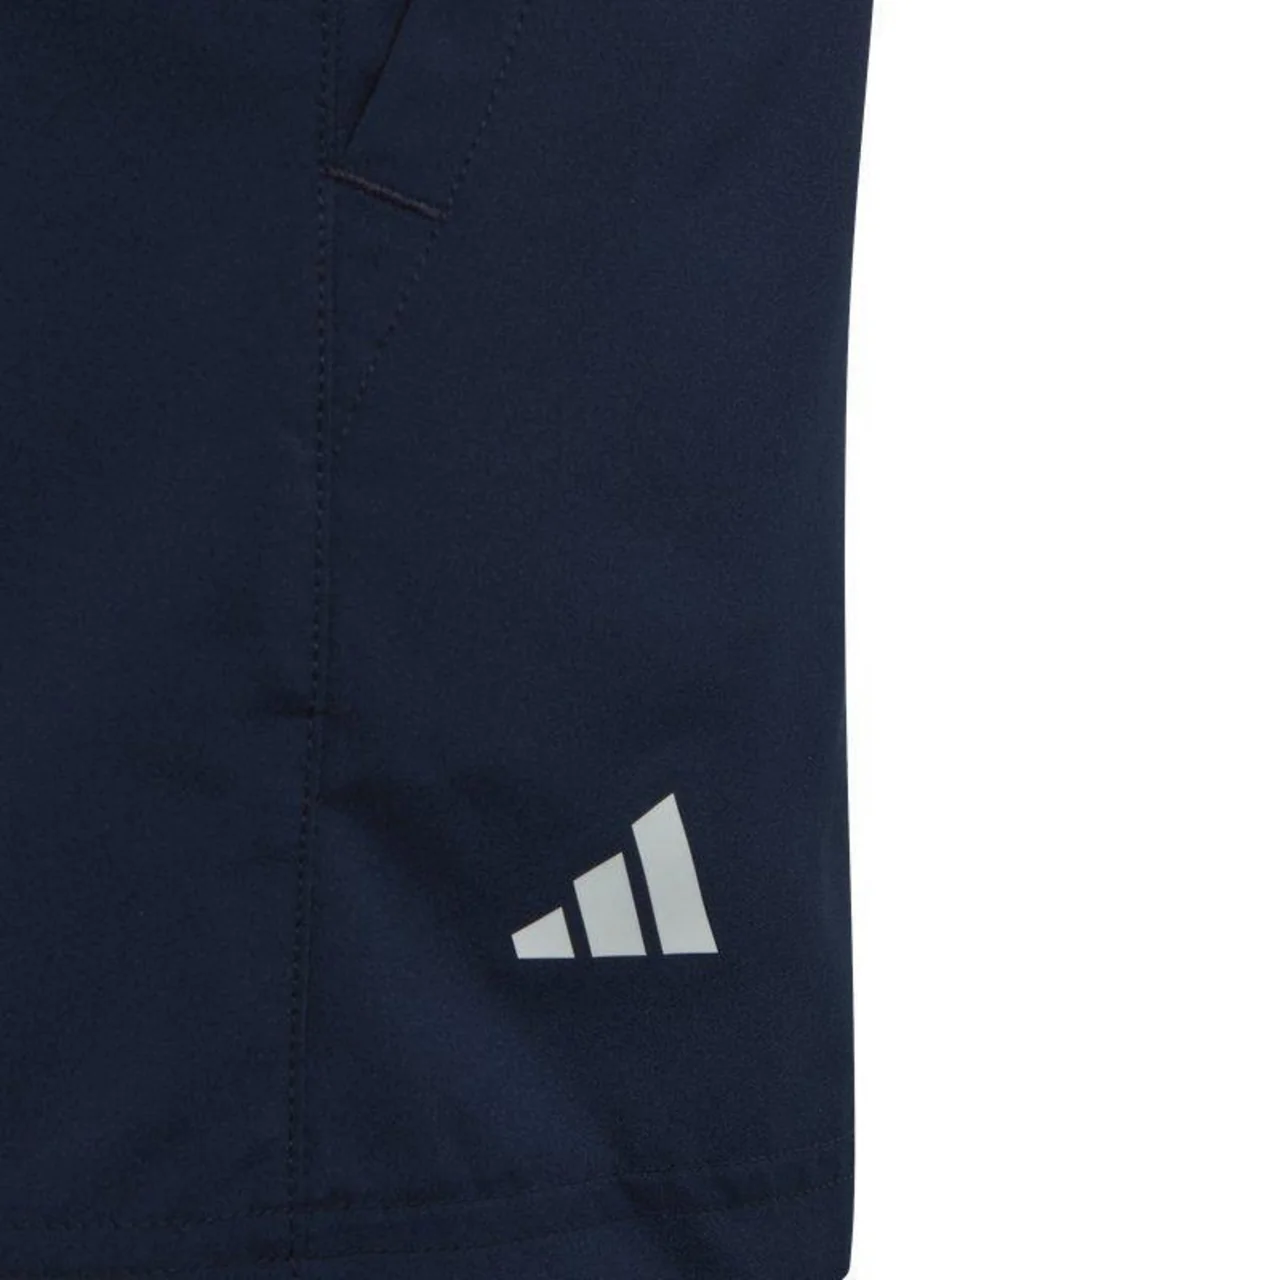 Adidas Boys Club 3-Stripe Shorts Navy